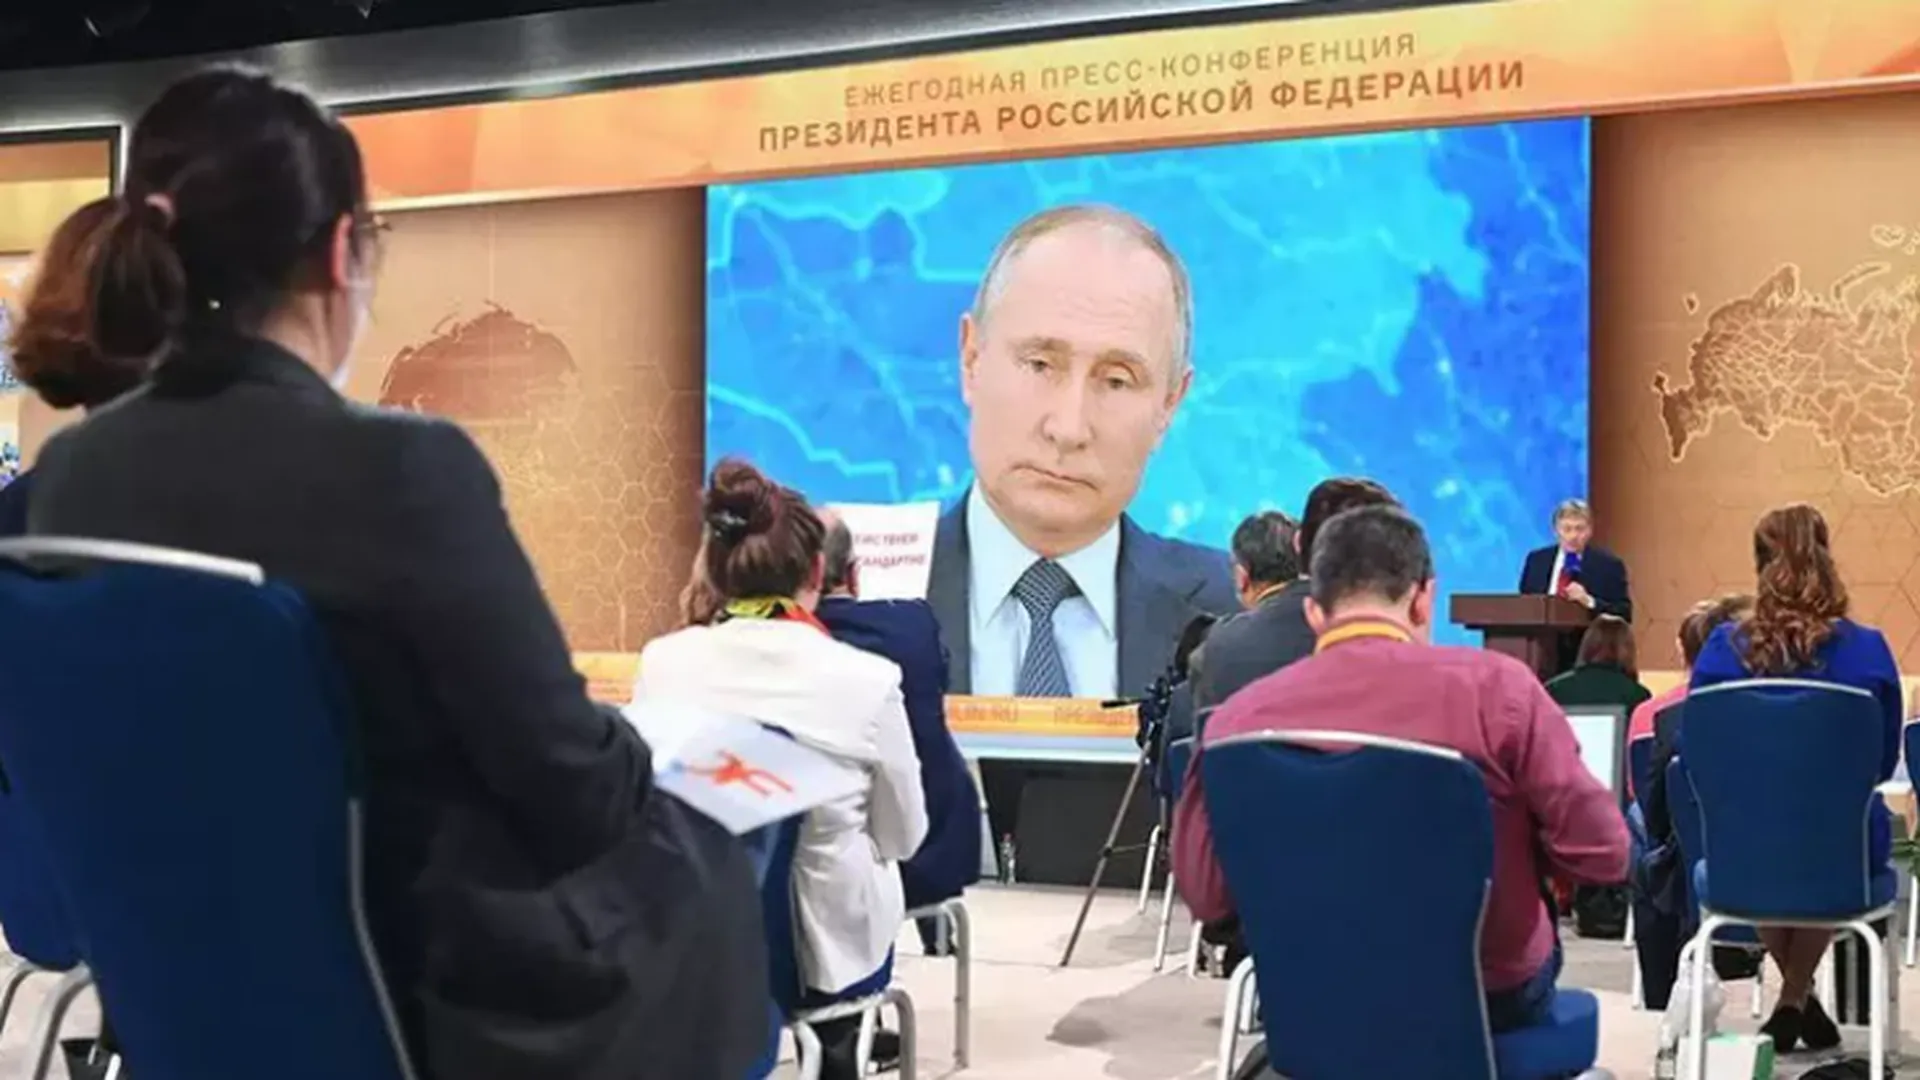 Пресс-конференция Путина, новый штамм коронавируса и конец «Дому-2». Неделя в фотогалерее